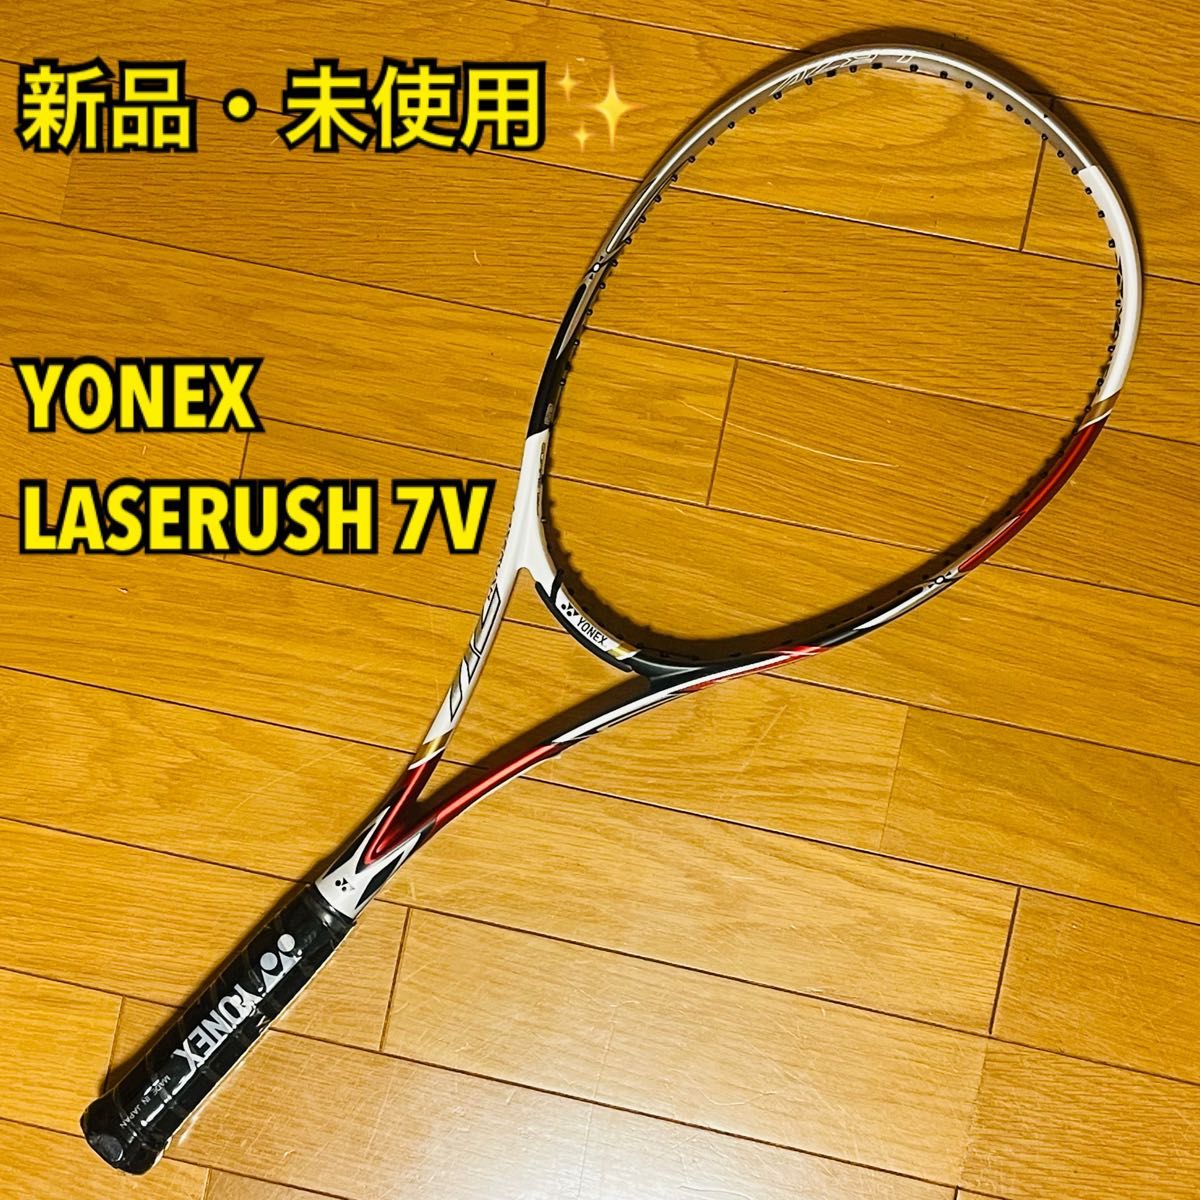 【新品・未使用】YONEX ヨネックス LASERUSH 7V / レーザーラッシュ 7V 軟式テニスラケット